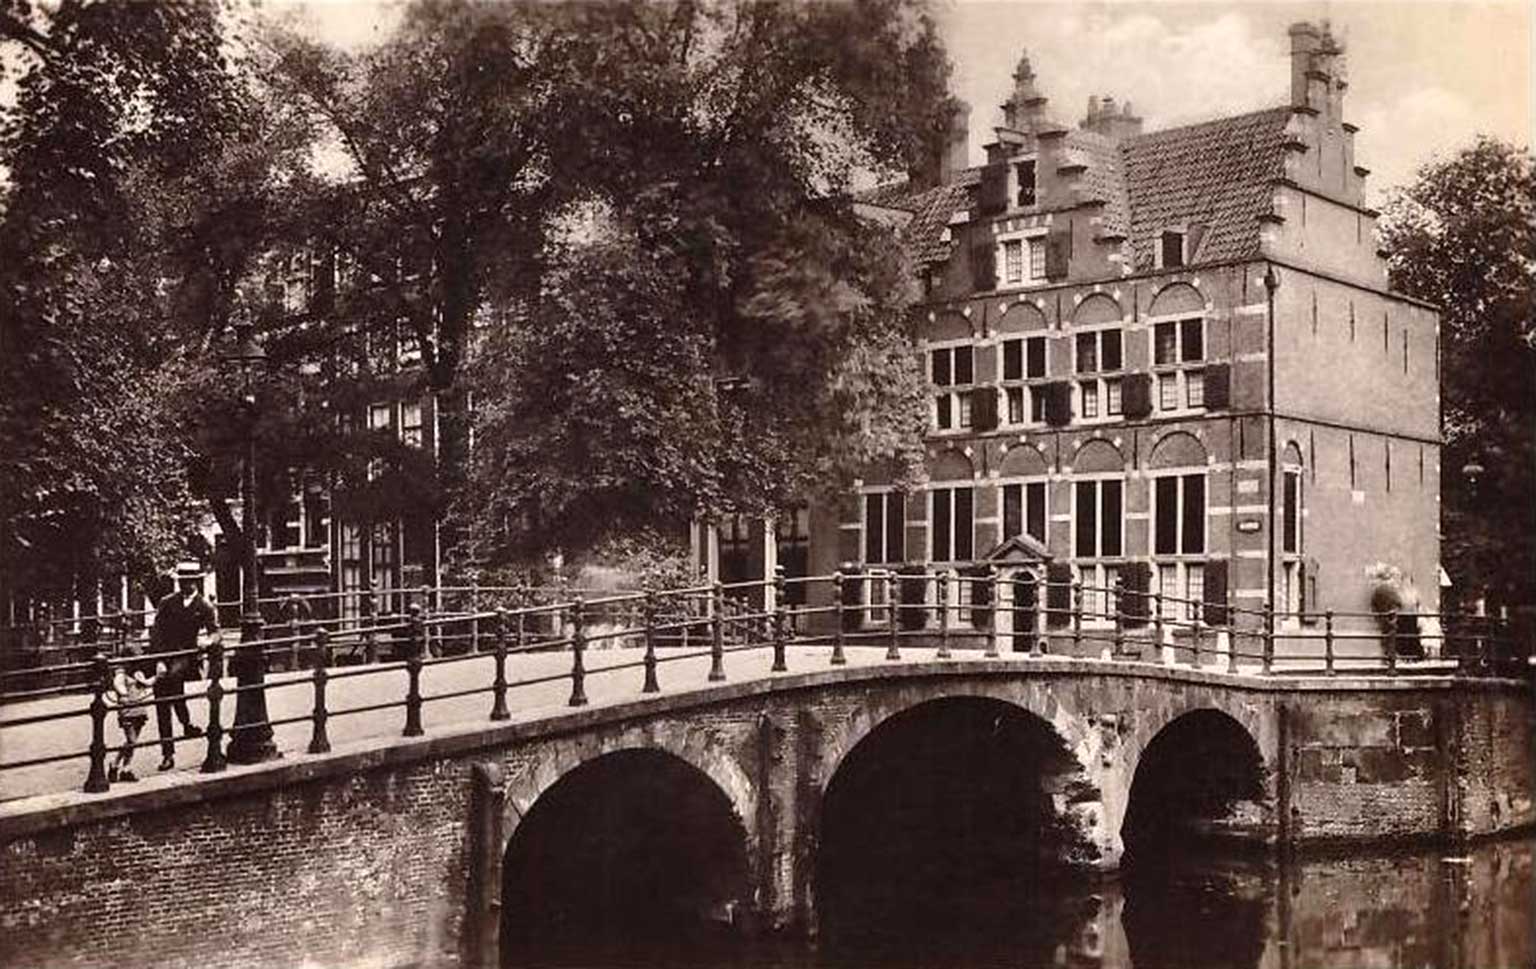 Huis Aan De Drie Grachten, Amsterdam, ansichtkaart uit 1900